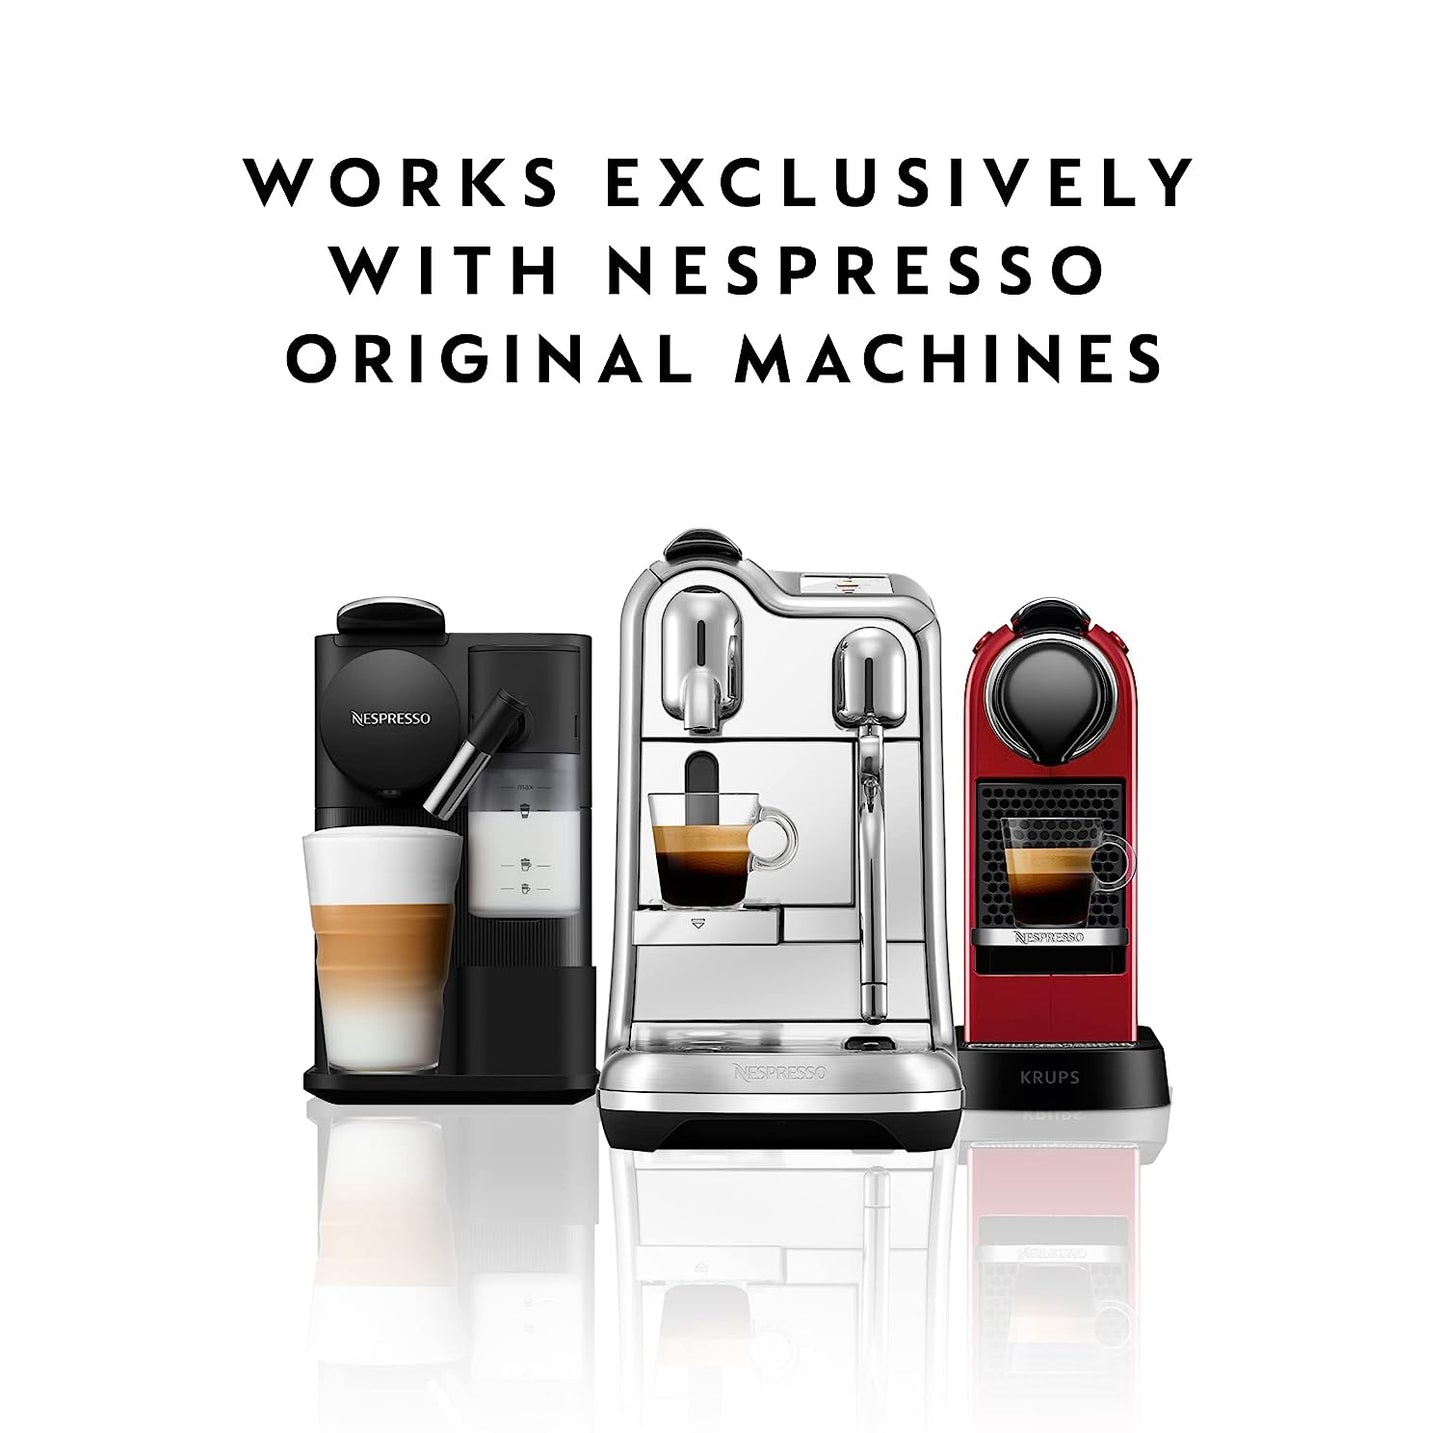 Nespresso Capsules OriginalLine, Ristretto Intenso, Dark Roast Coffee, Coffee Pods, Brews 1.35 Ounce (ORIGINALLINE ONLY), 10 Count (Pack of 5)